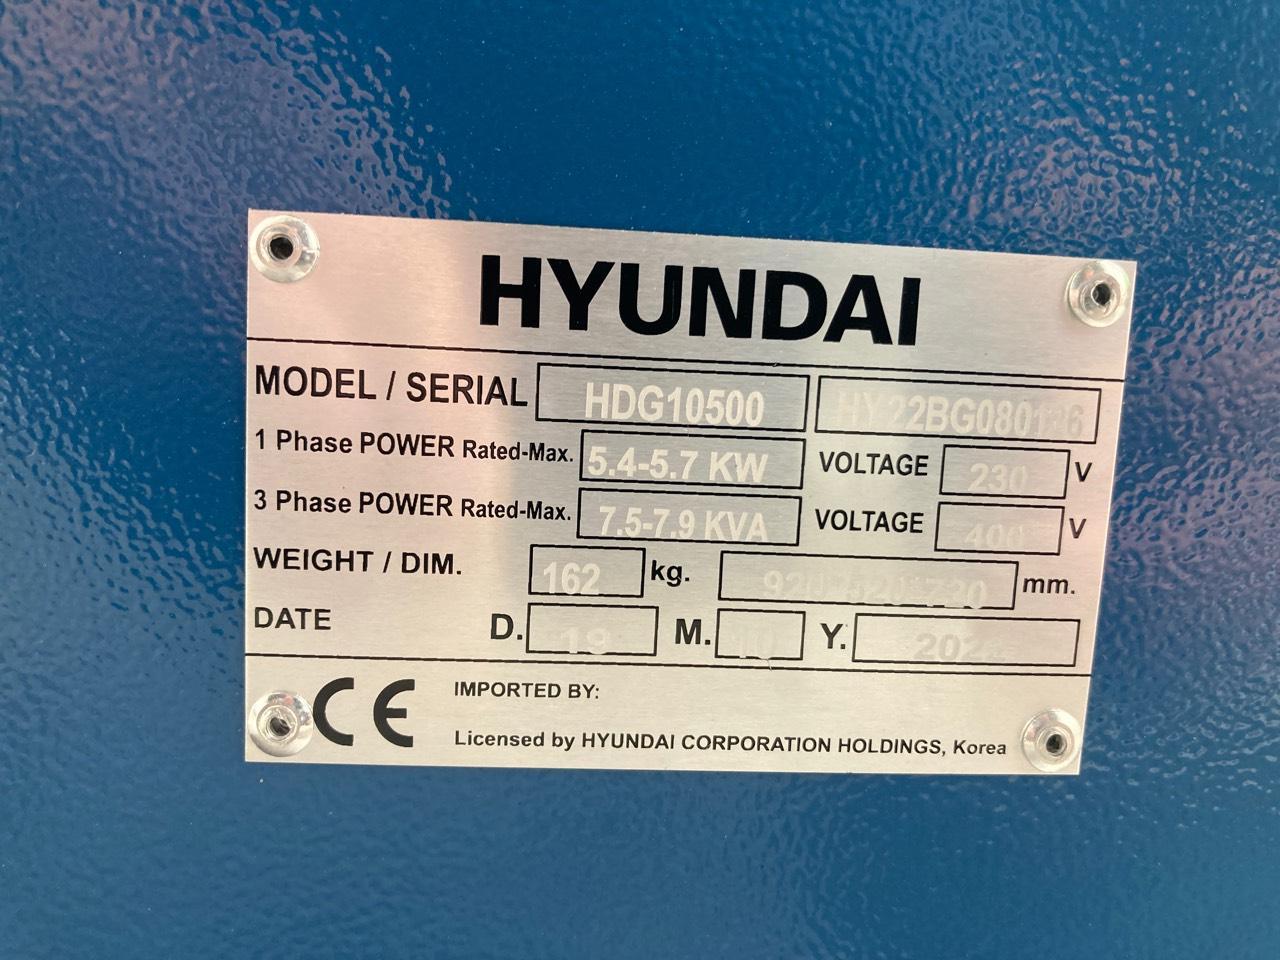 Stromaggregat: Hyundai Diesel Notstromaggregat 400 V, 7,9 kVA